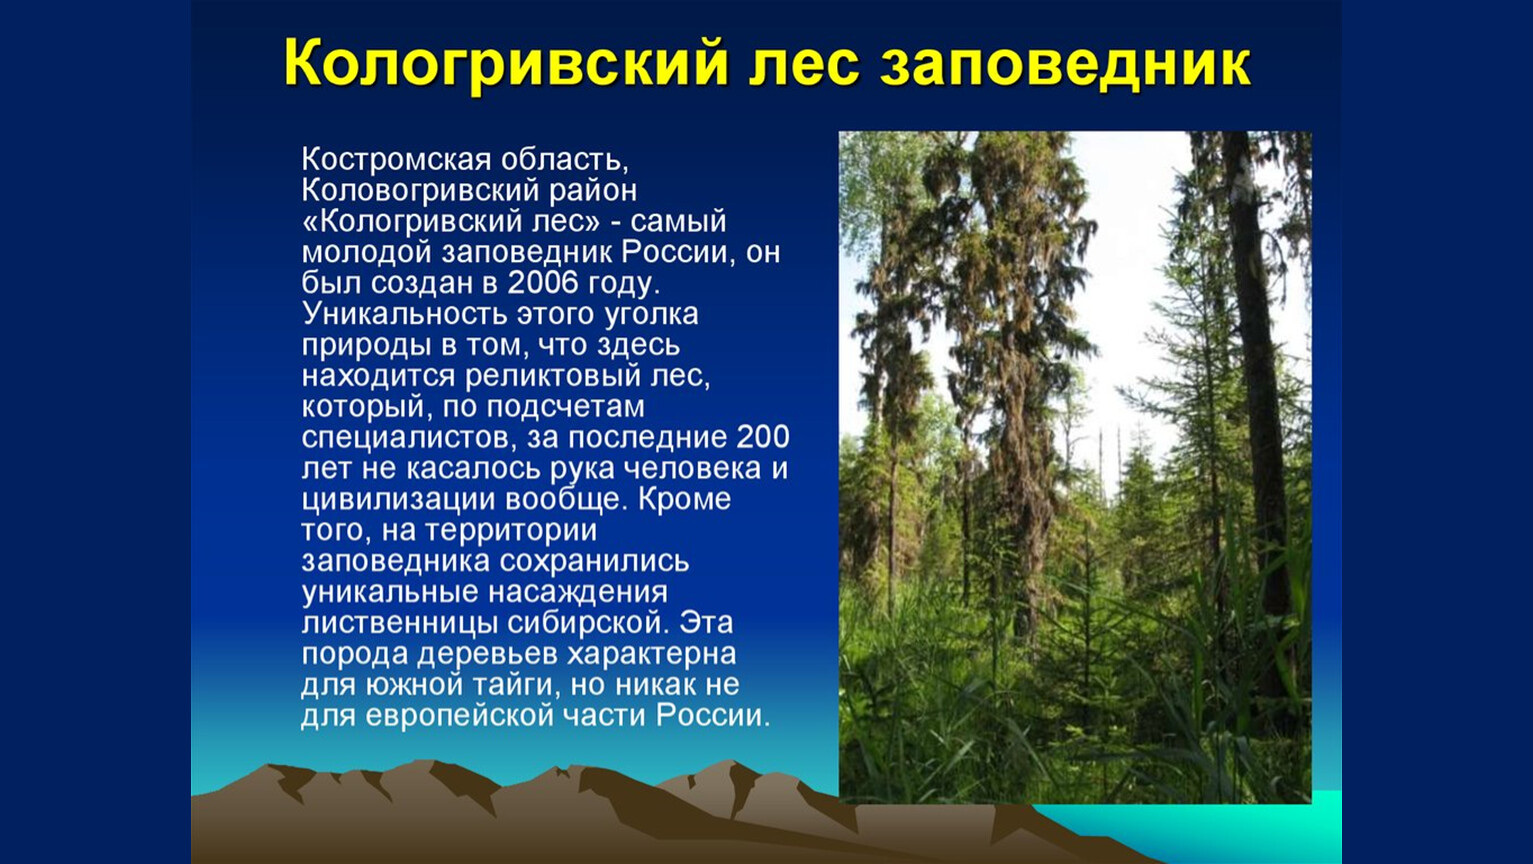 Кологривский лес заповедник